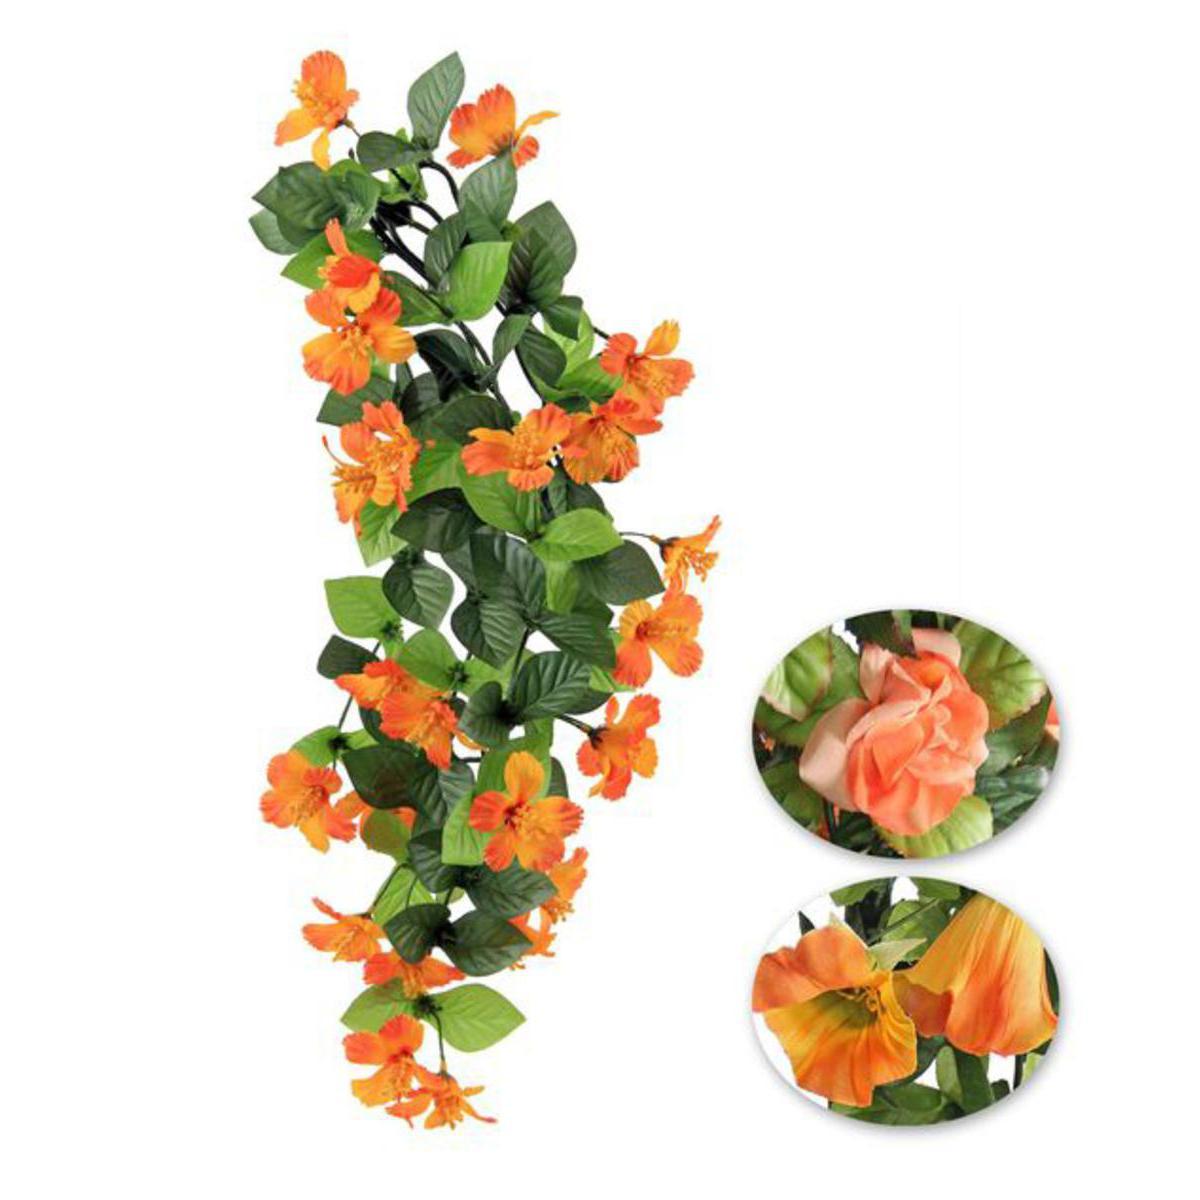 Chute fleurie - Plastique et polyester - H 50 cm - 3 tons d'orange